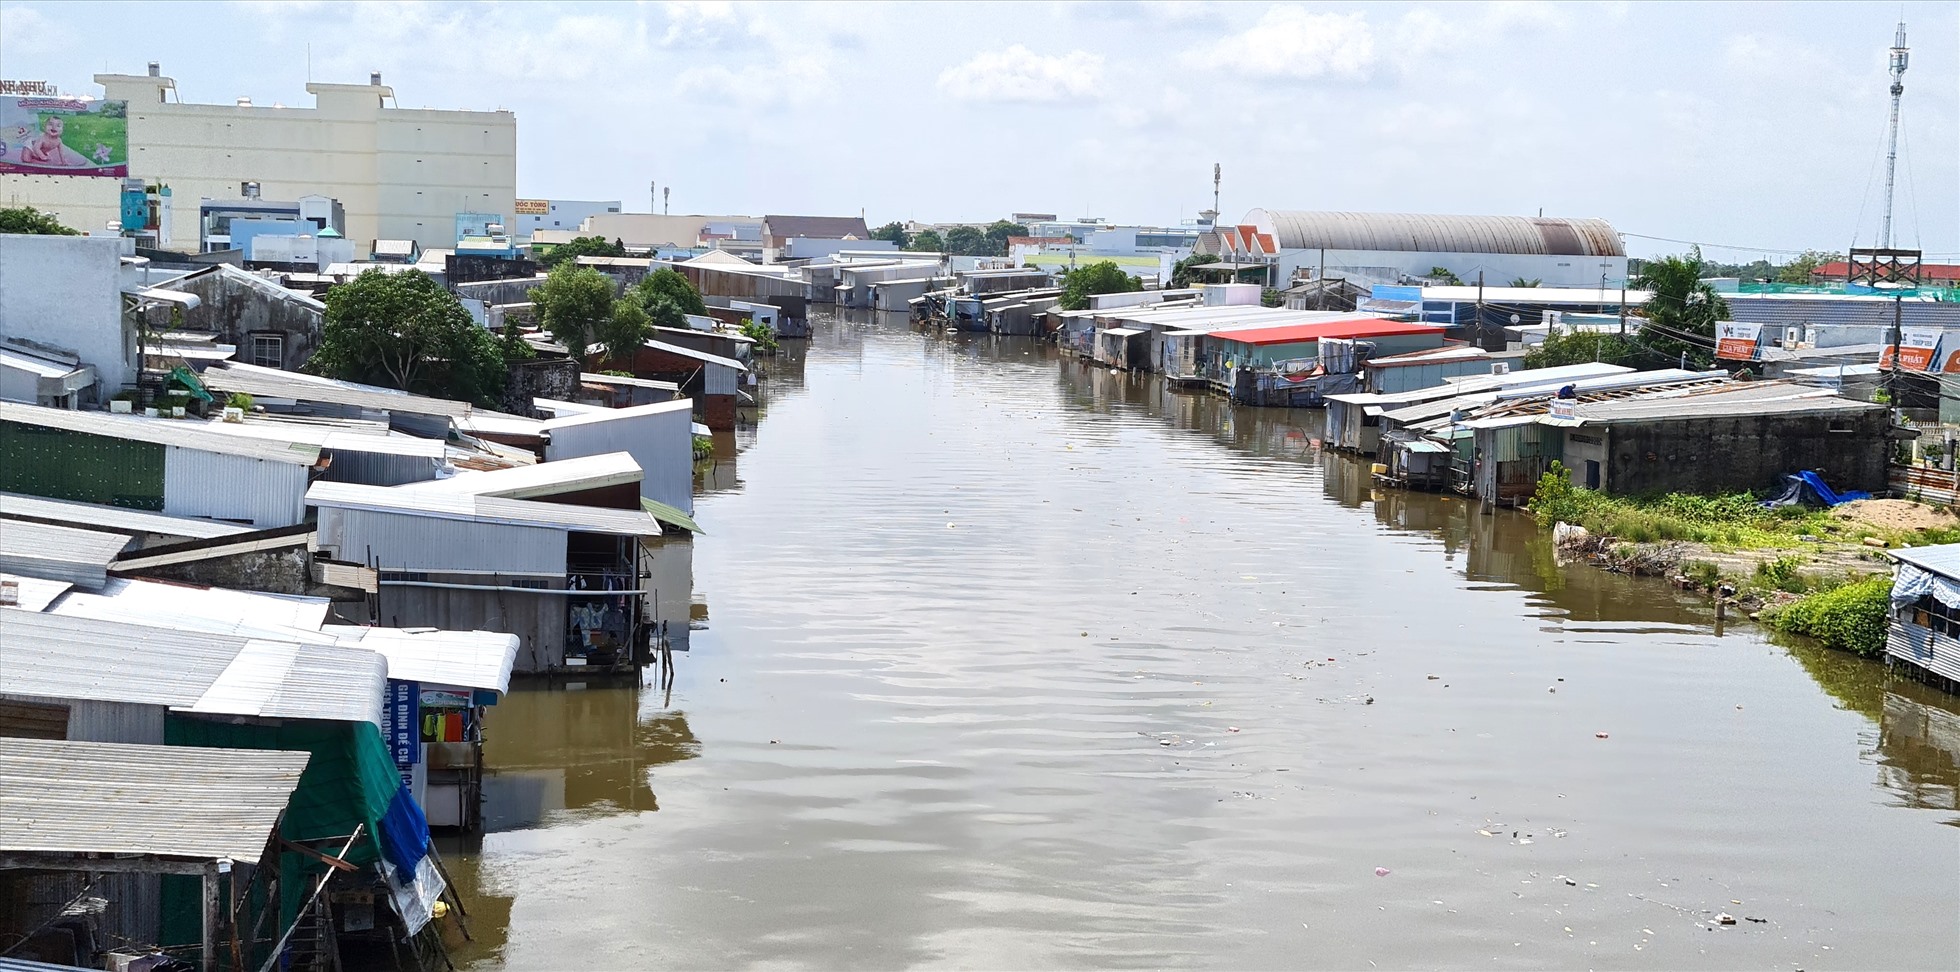 Tập quán xây nhà ven sông tại tỉnh Cà Mau đang  đối mặt với nguy cơ sạt lở, ảnh hưởng đến đời sống của người dân cần được di dời vào nơi an toàn. Ảnh: Nhật Hồ